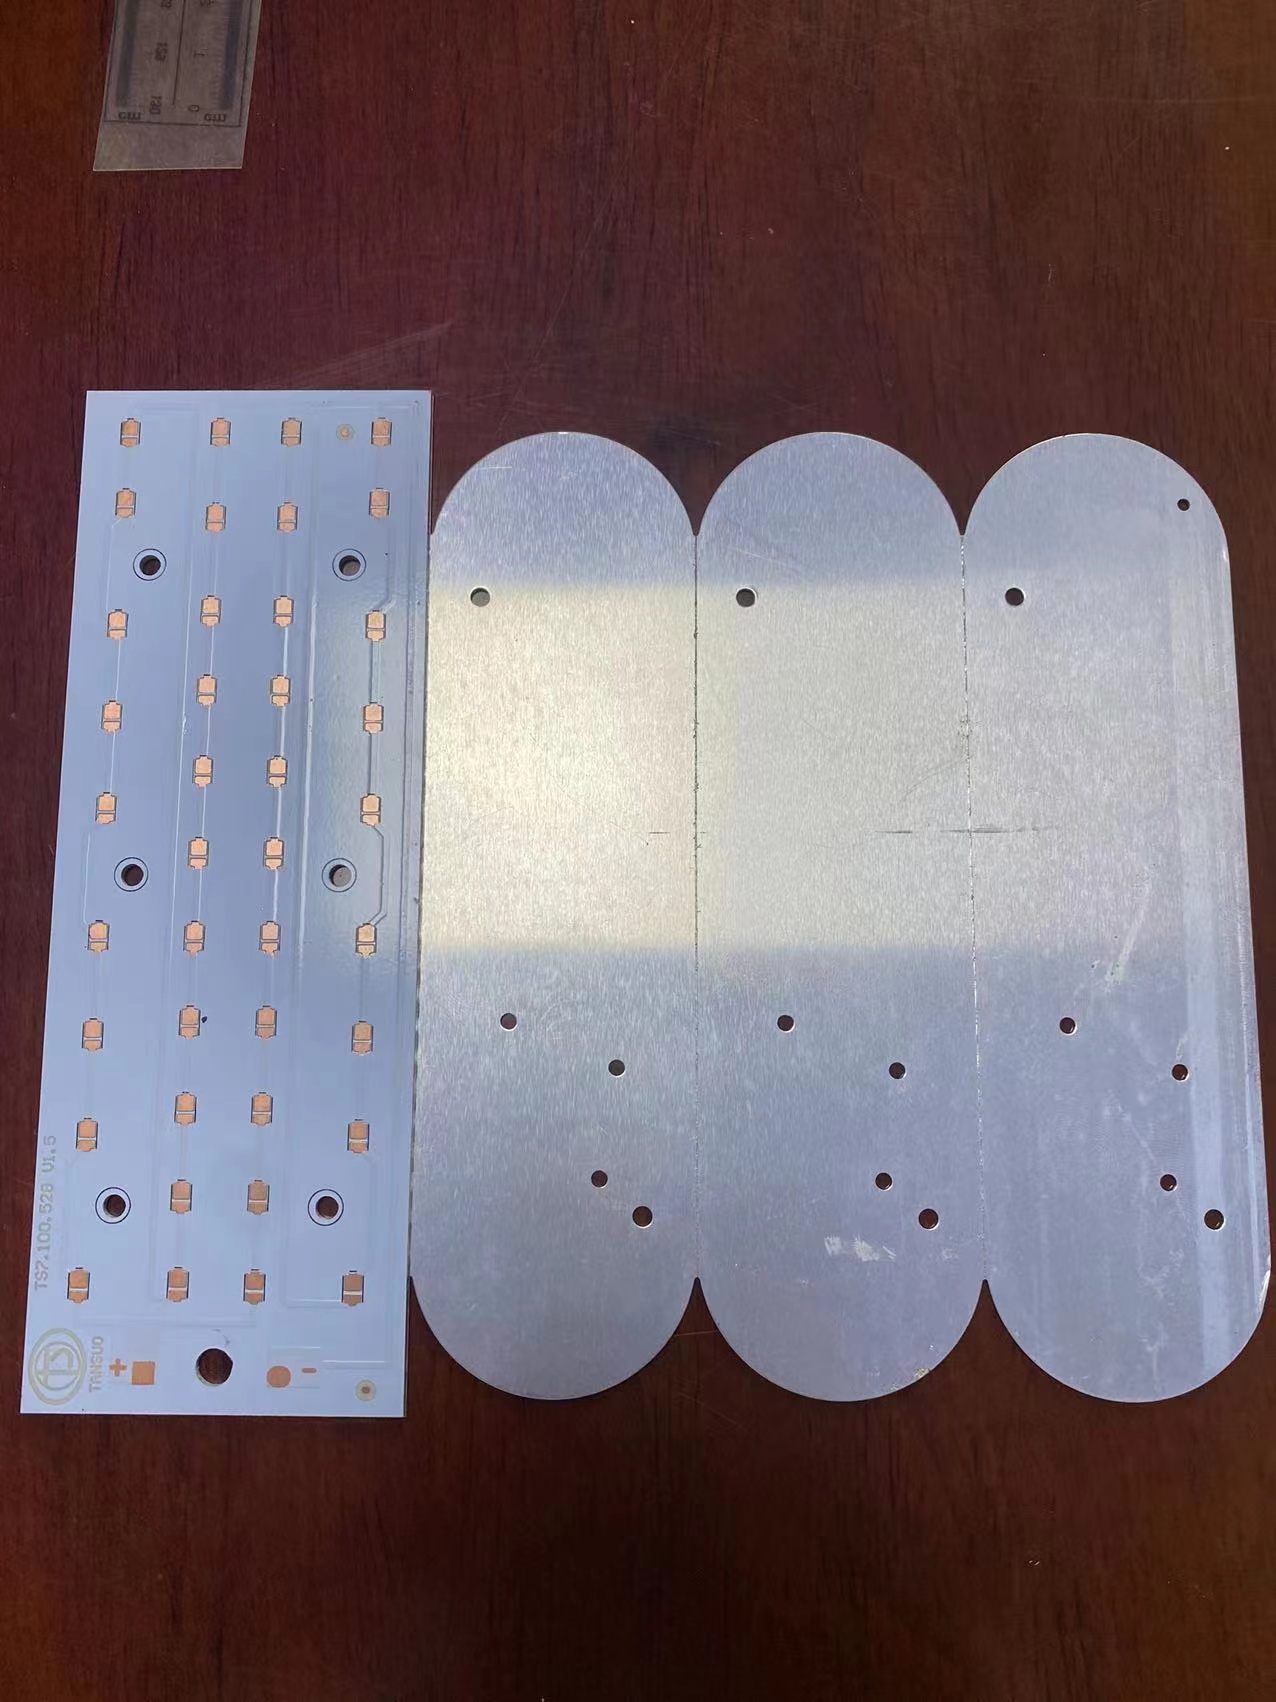 广州排线电路板生产厂家,广州排线电路板多少钱,广州排线电路板价格  LED铝基板线路板